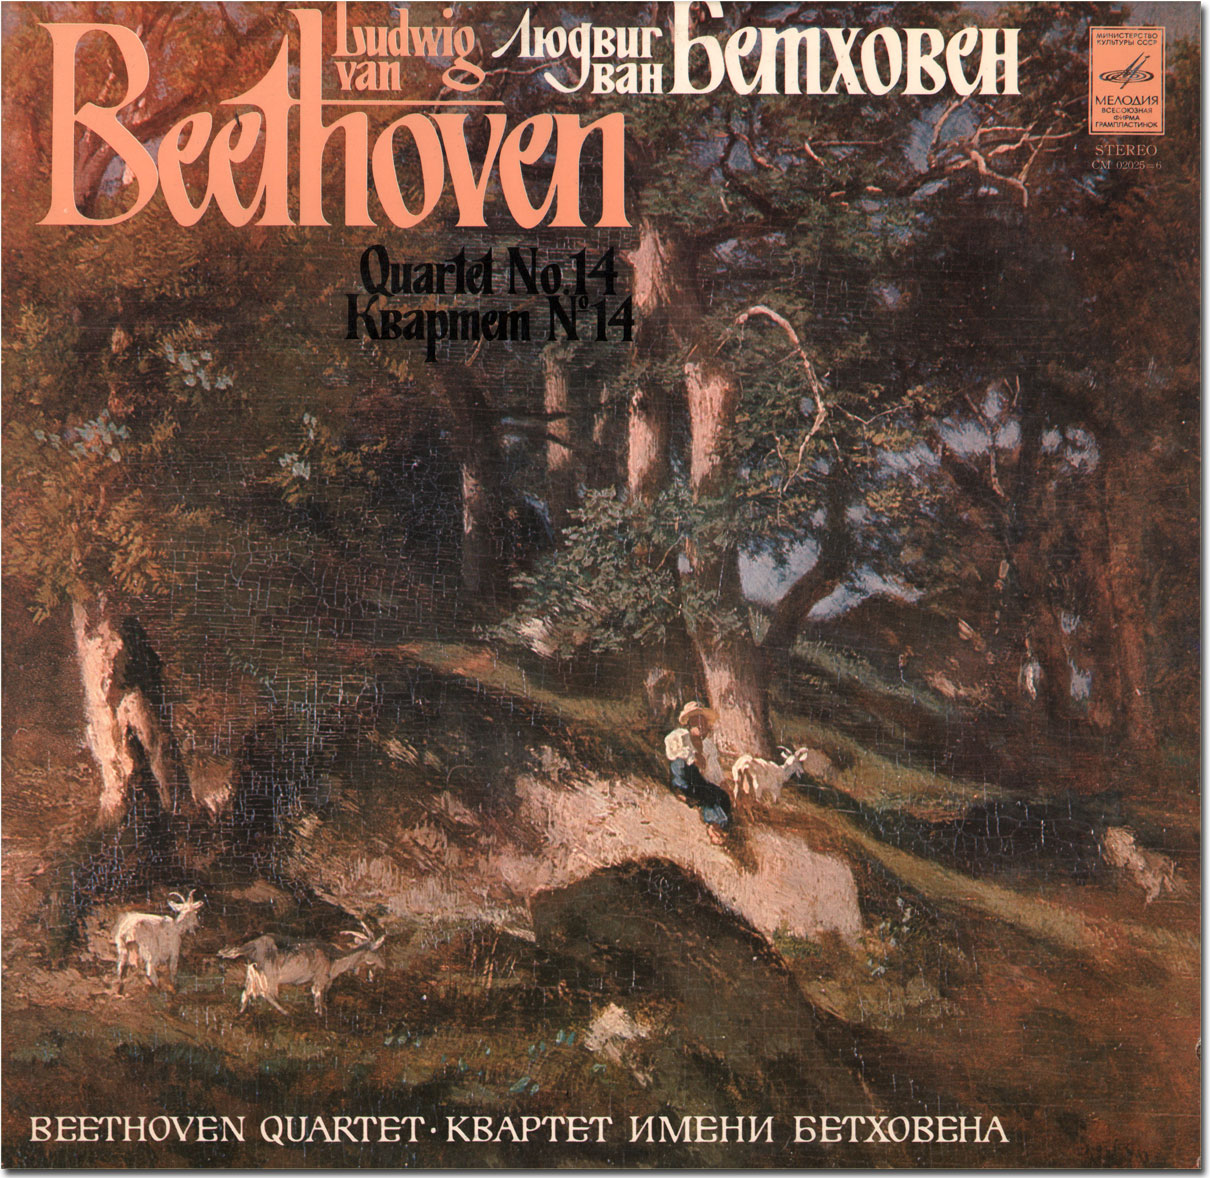 Л. Бетховен: Квартет № 14 (Квартет им. Бетховена)